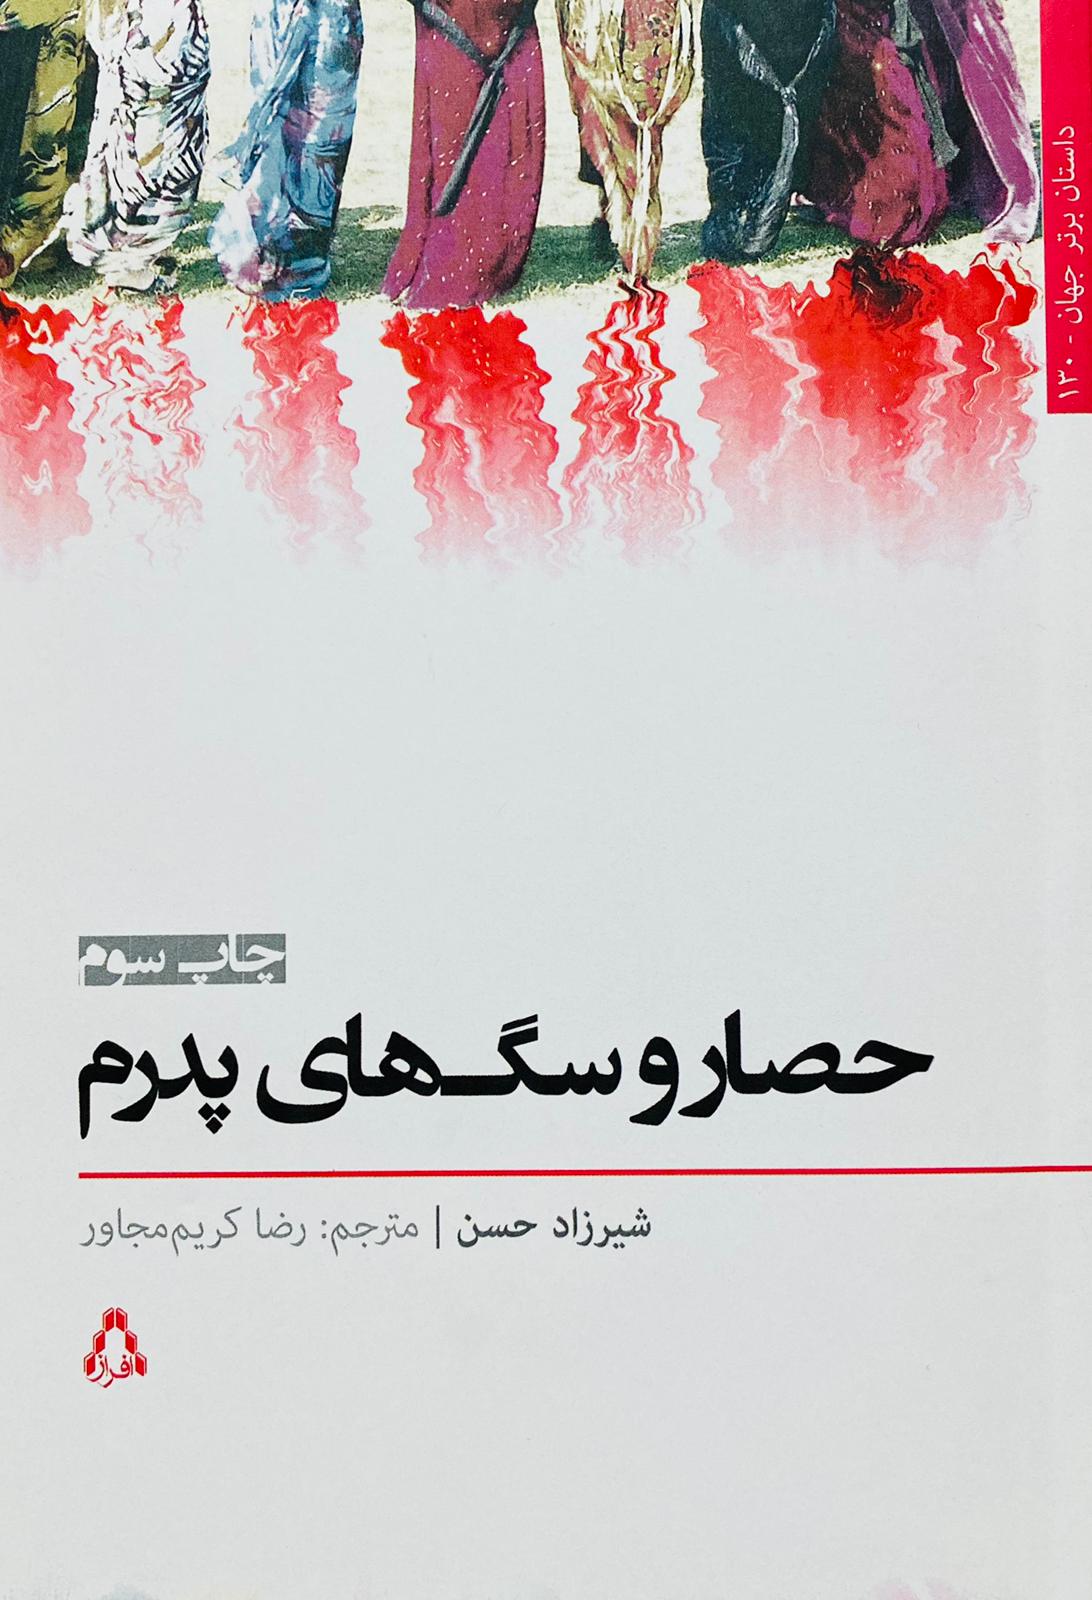 کتاب حصار و سگ های پدرم نوشته شیرزاد حسن